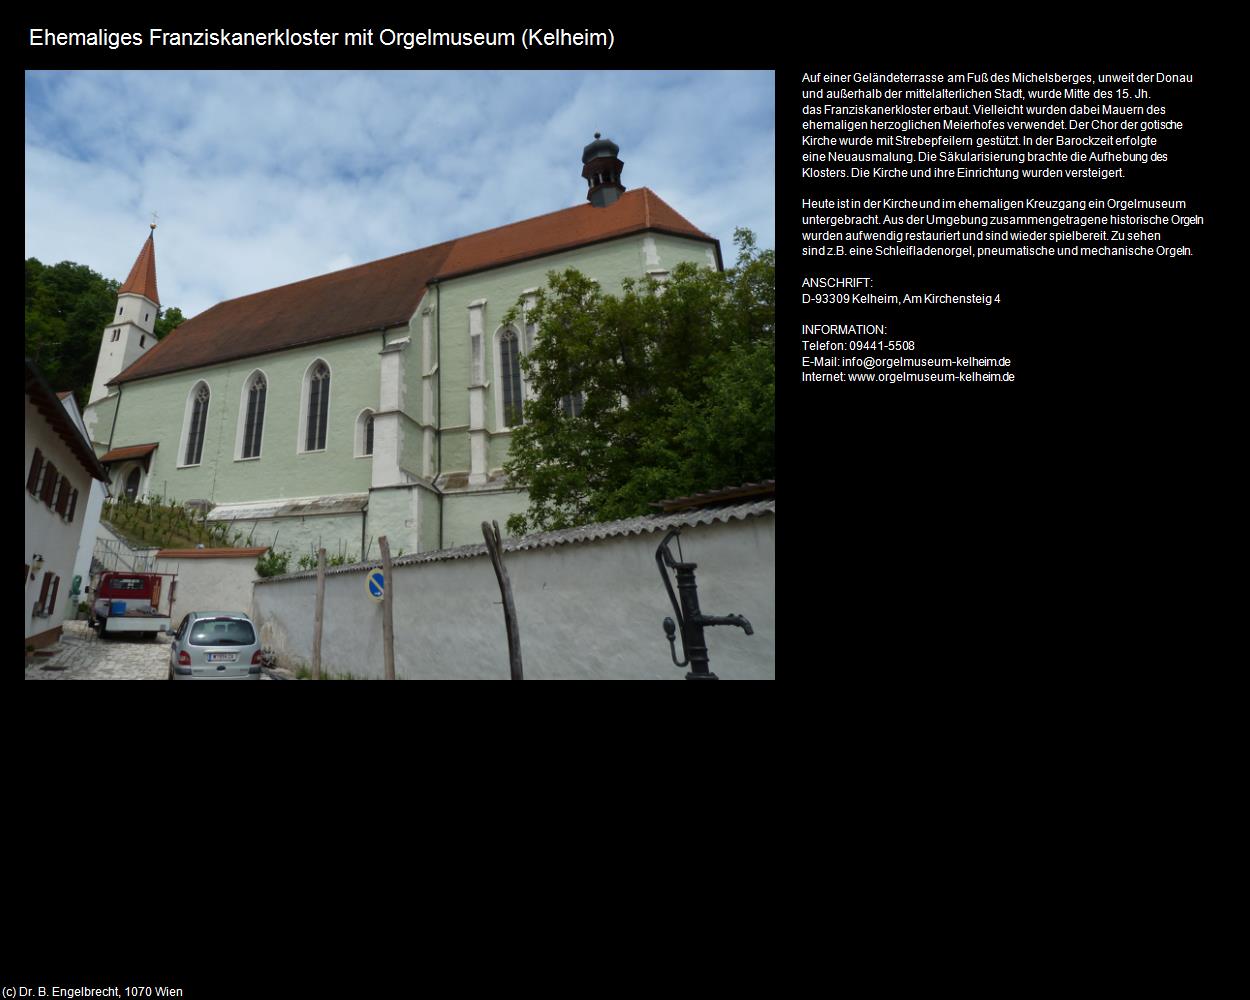 Ehem. Franziskanerkloster mit Orgelmuseum  (Kelheim) in Kulturatlas-BAYERN